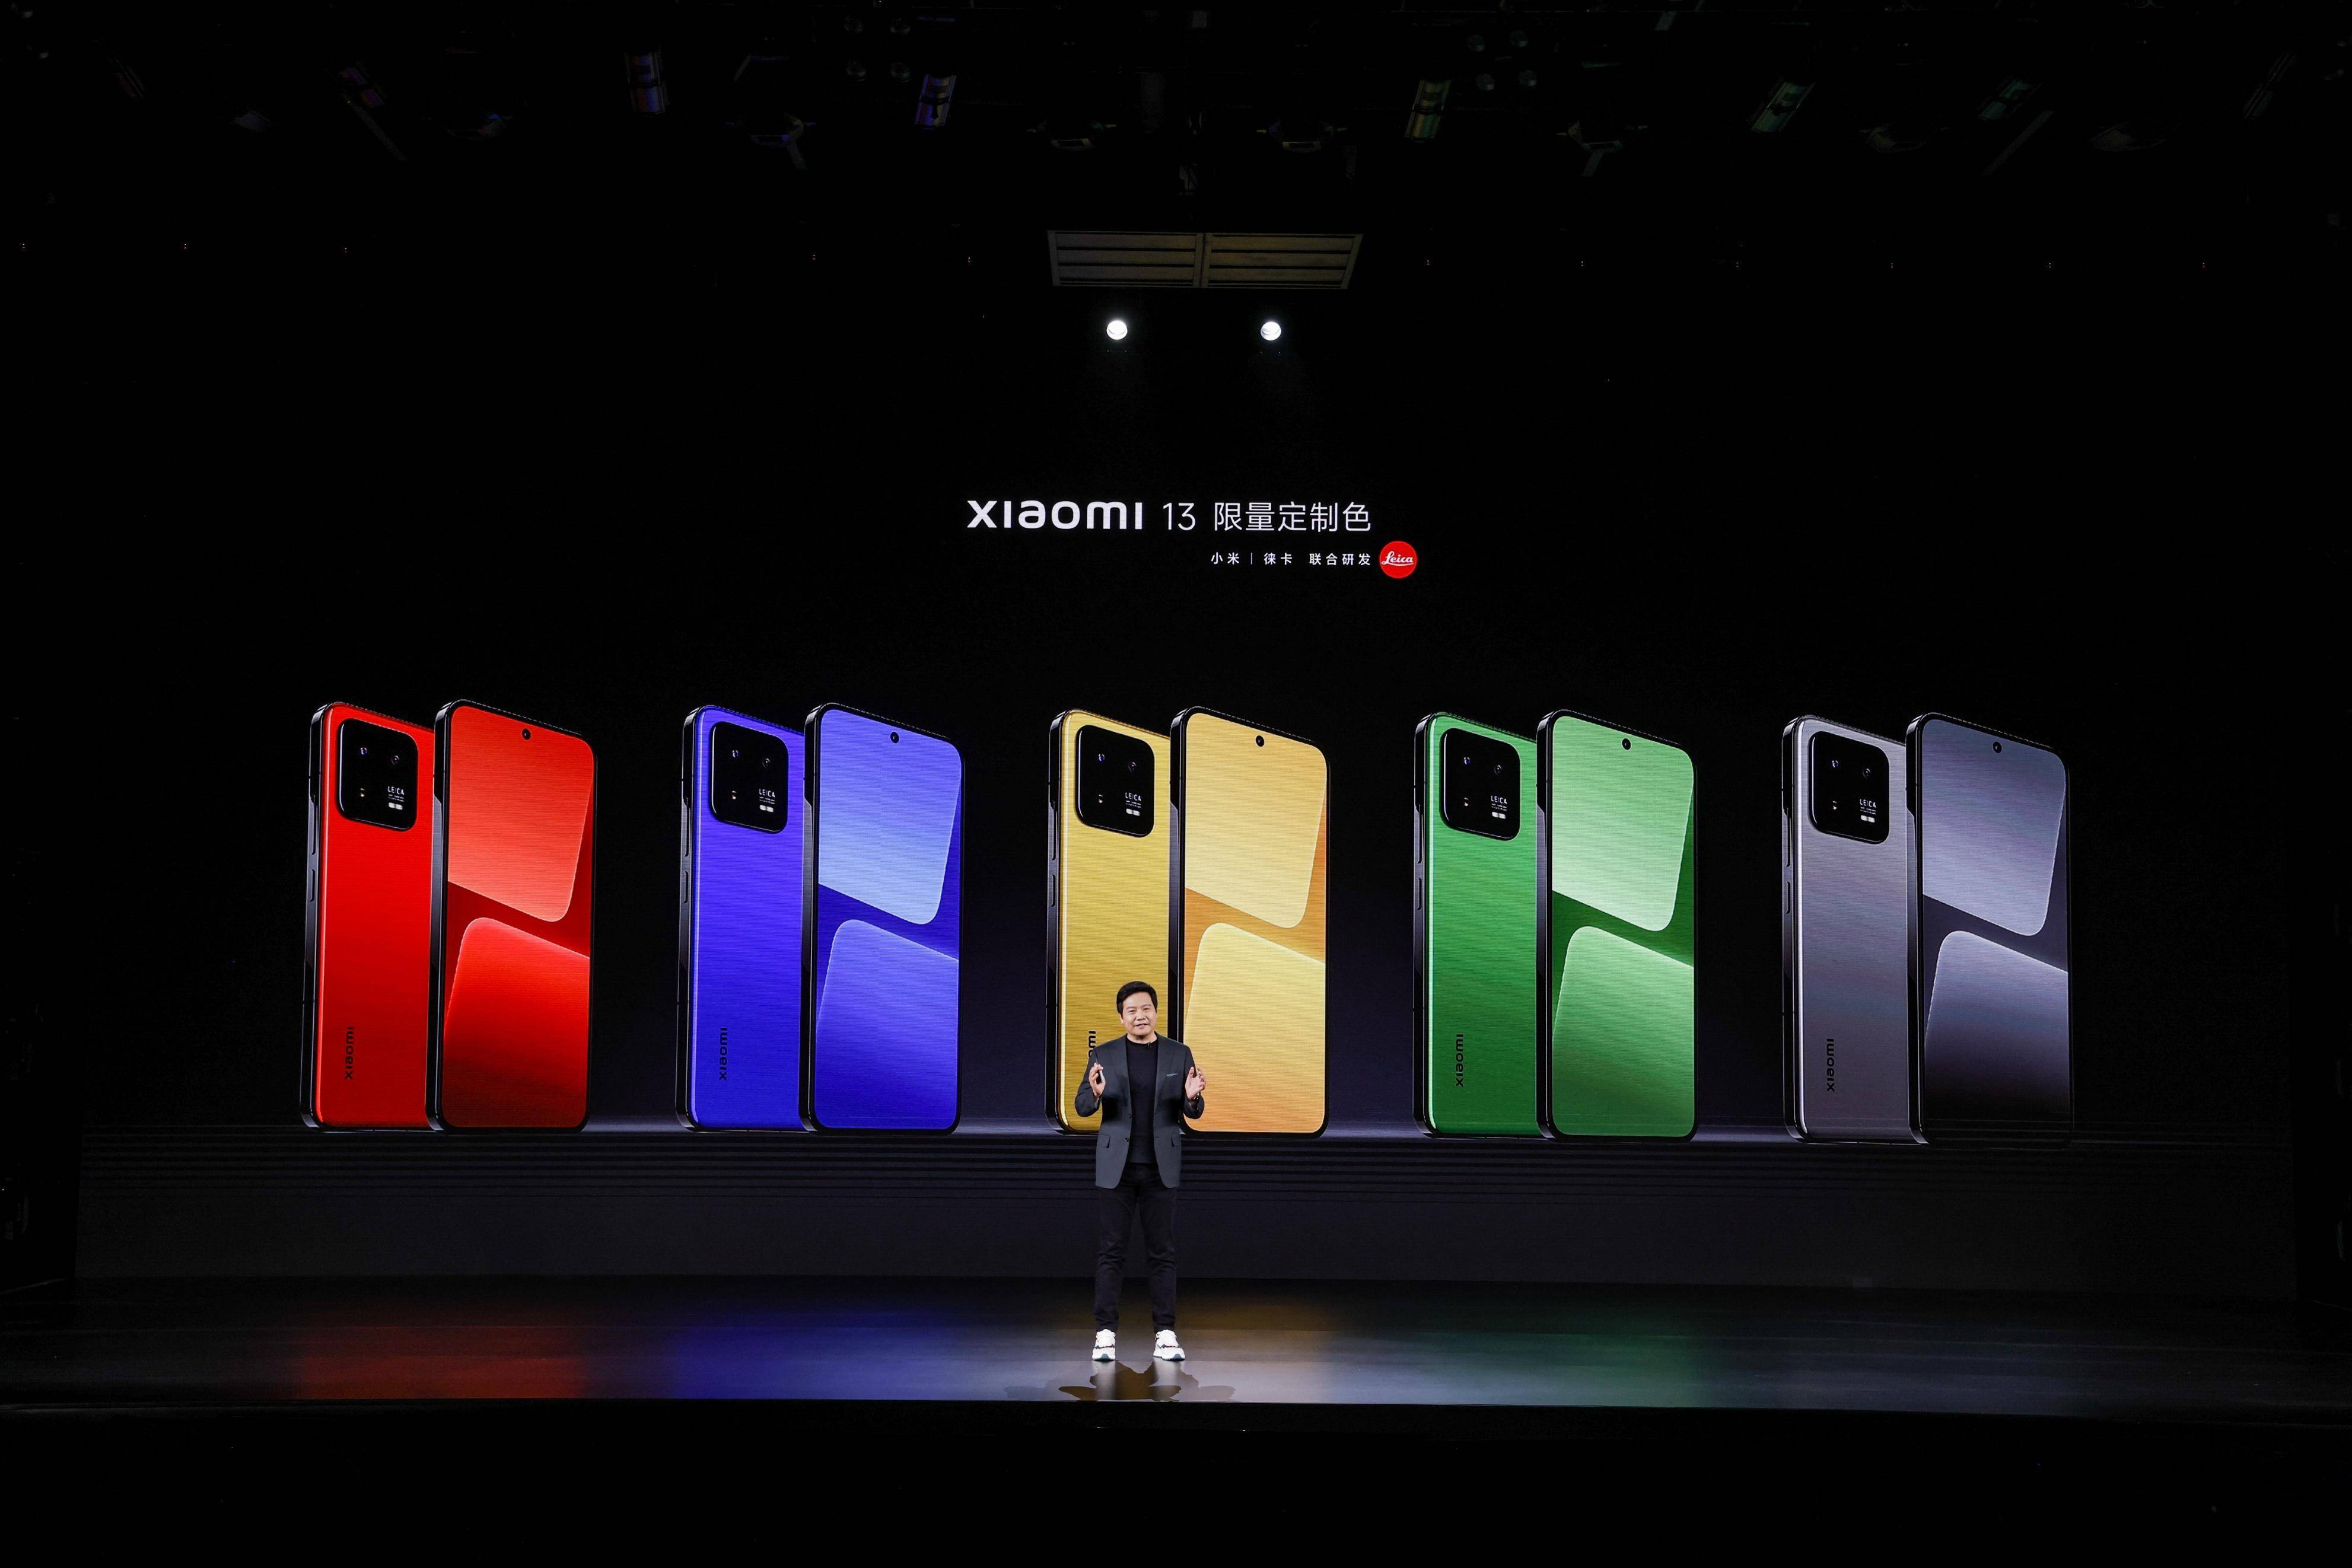 小米13发布会回顾:9种配色,堪比电竞手机